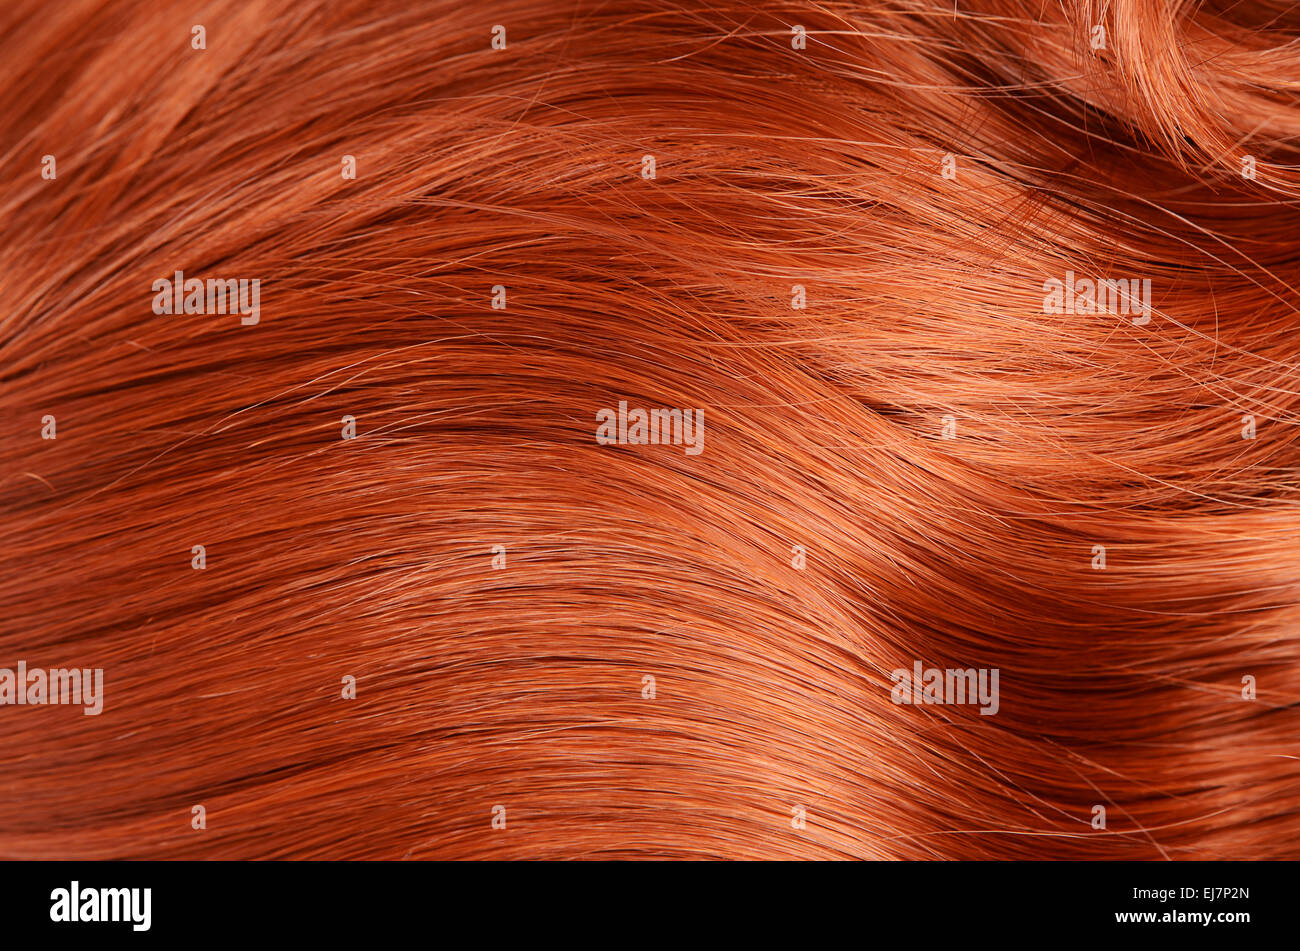 Schöne rote Haare als Hintergrund Stockfoto